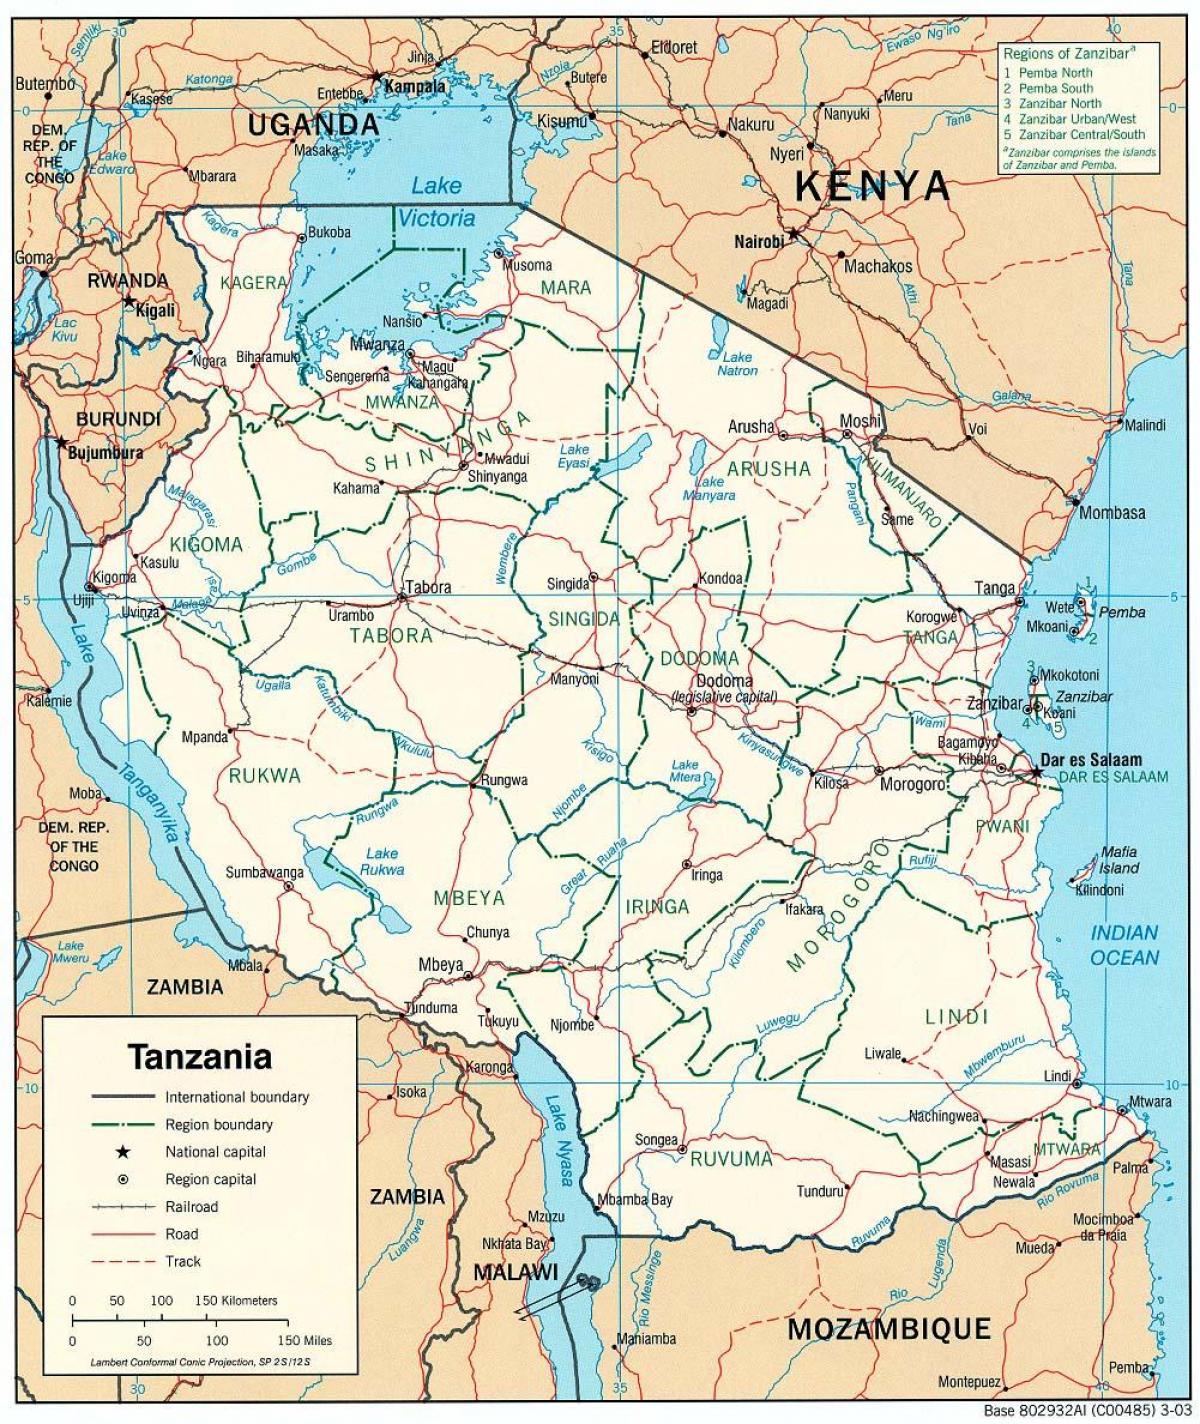 מפה של טנזניה עם ערים